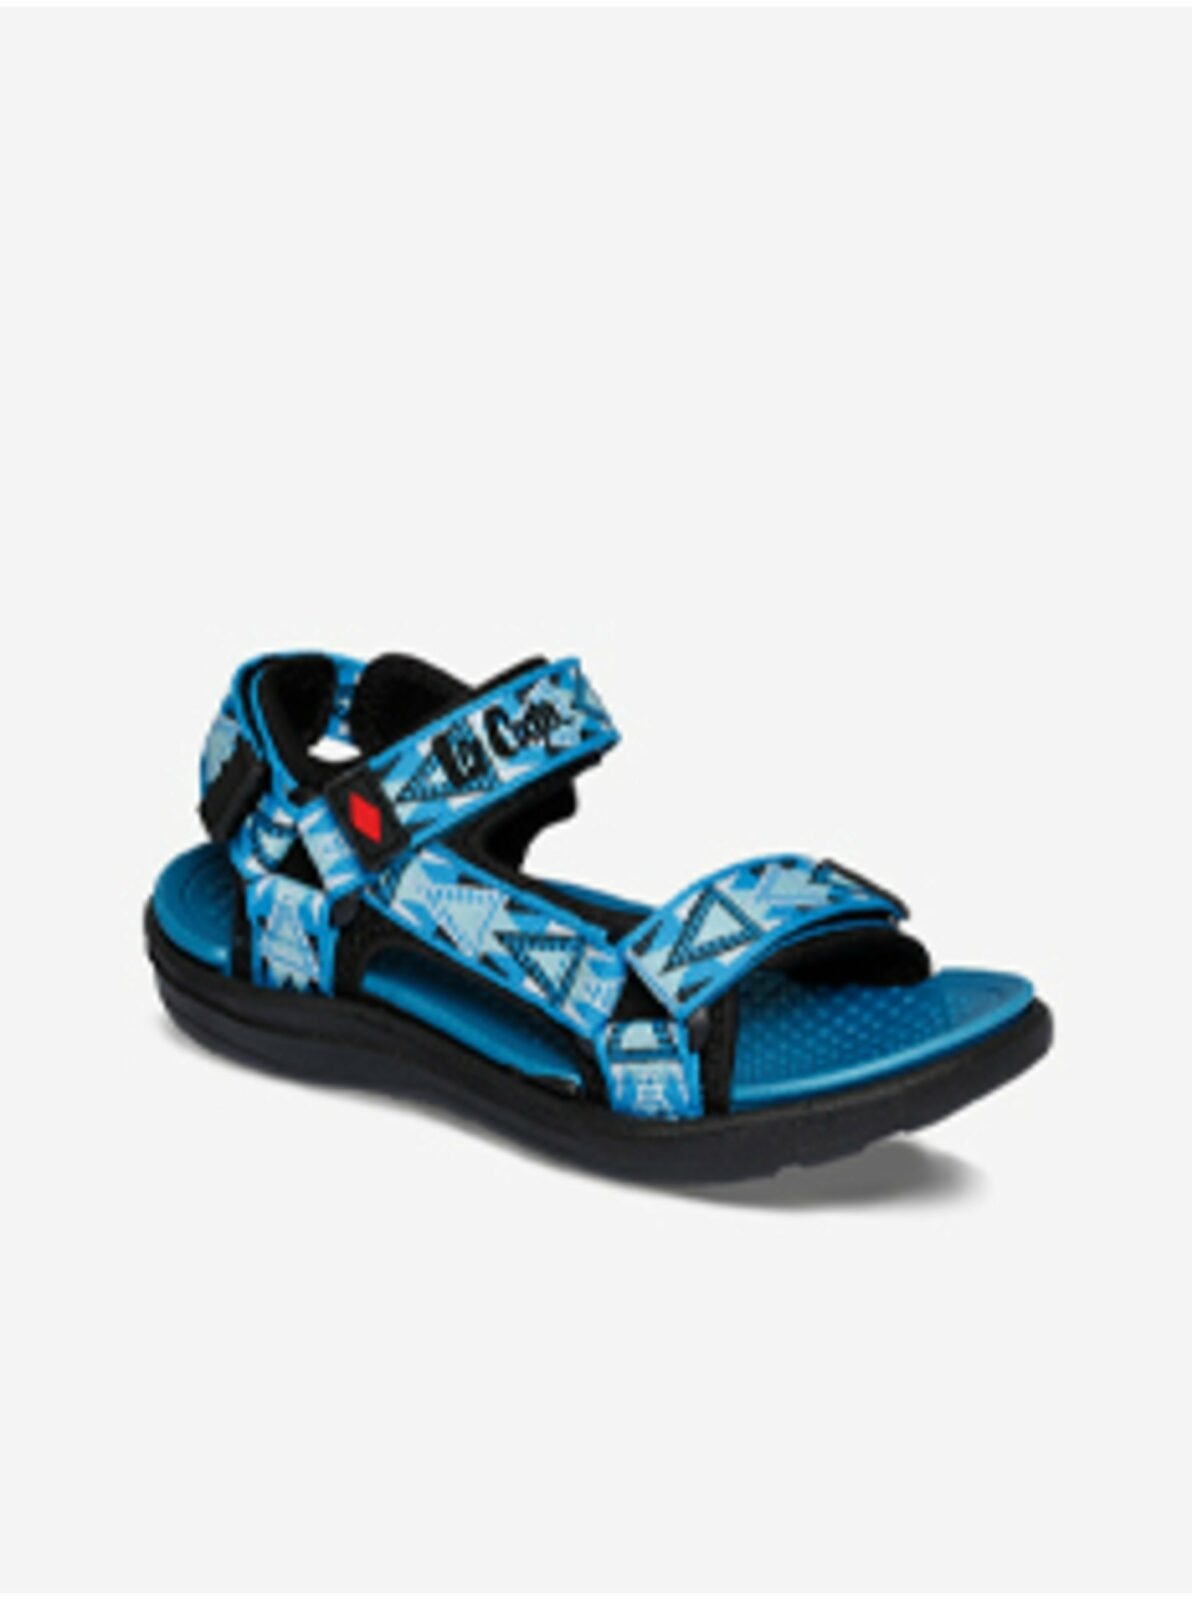 Modré chlapecké vzorované sandály Lee